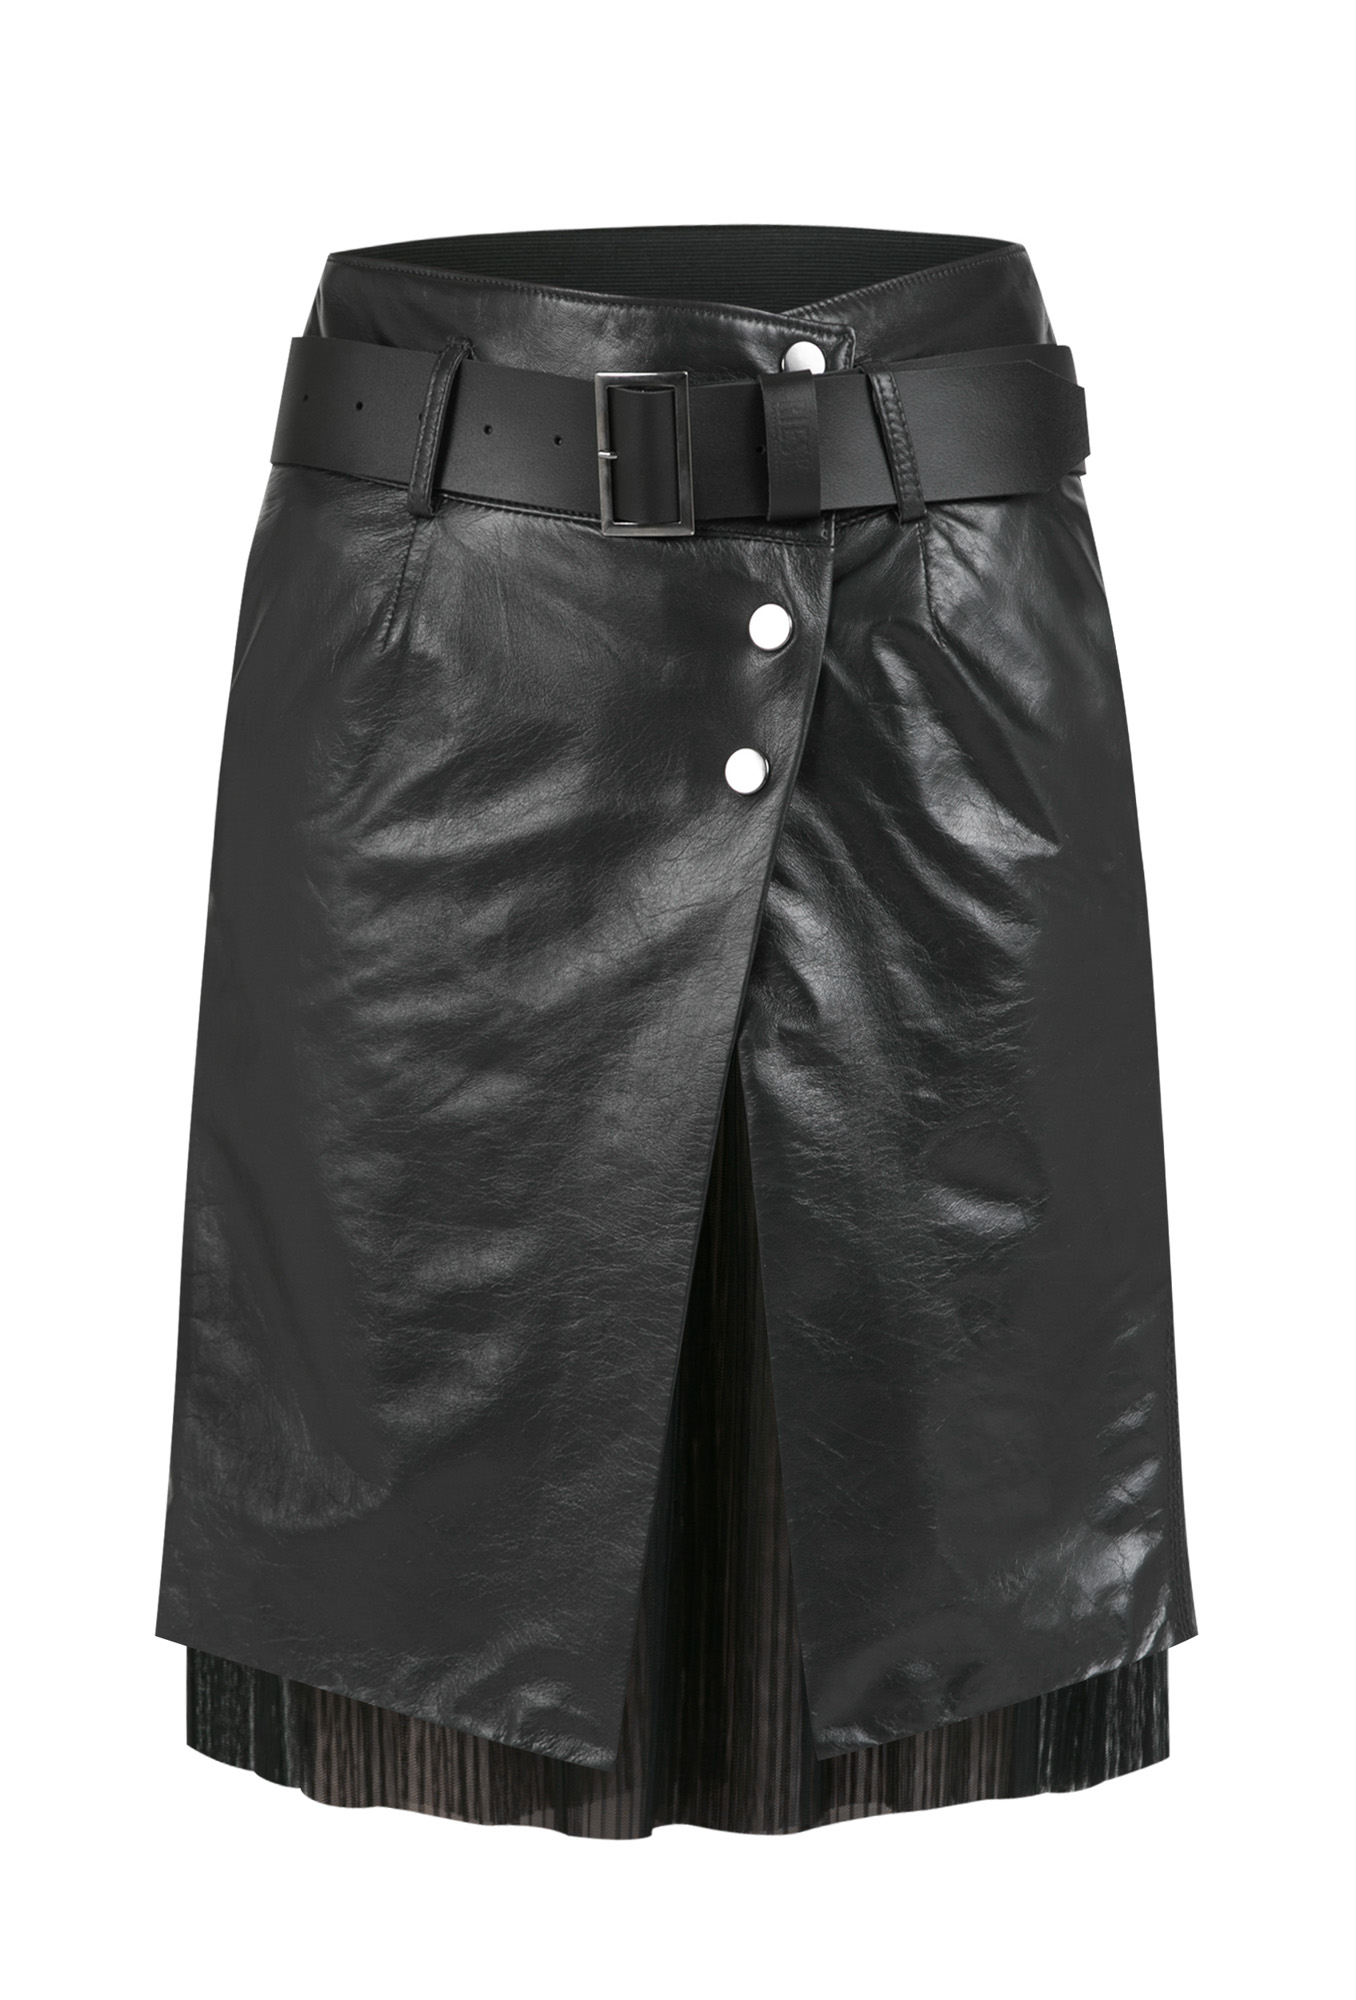 leather skirt, leather skirt with leather strap, graphite genuine leather skirt, graphite leather skirt with petticoat, Italian leather skirt, natural leather skirt,  graphite, leather skirts with petticoat, premium